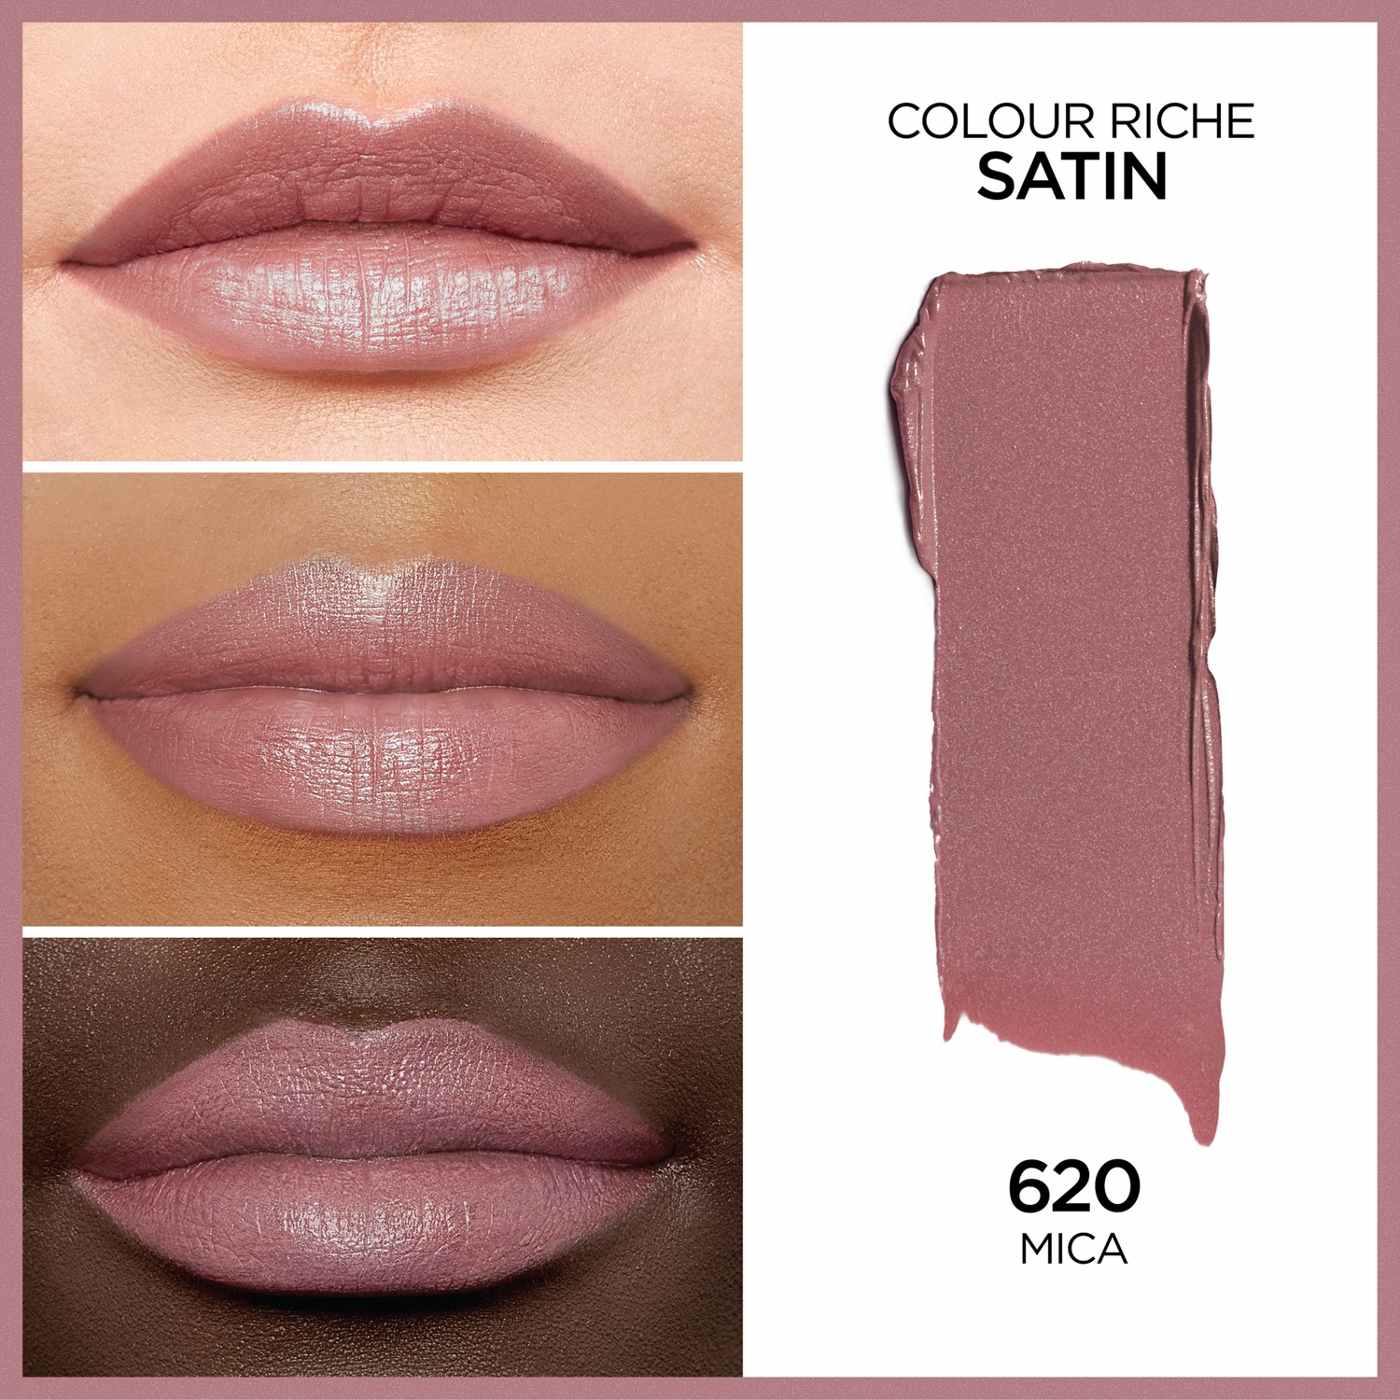 L'Oréal Paris Colour Riche Original Satin Lipstick - Mica; image 4 of 6